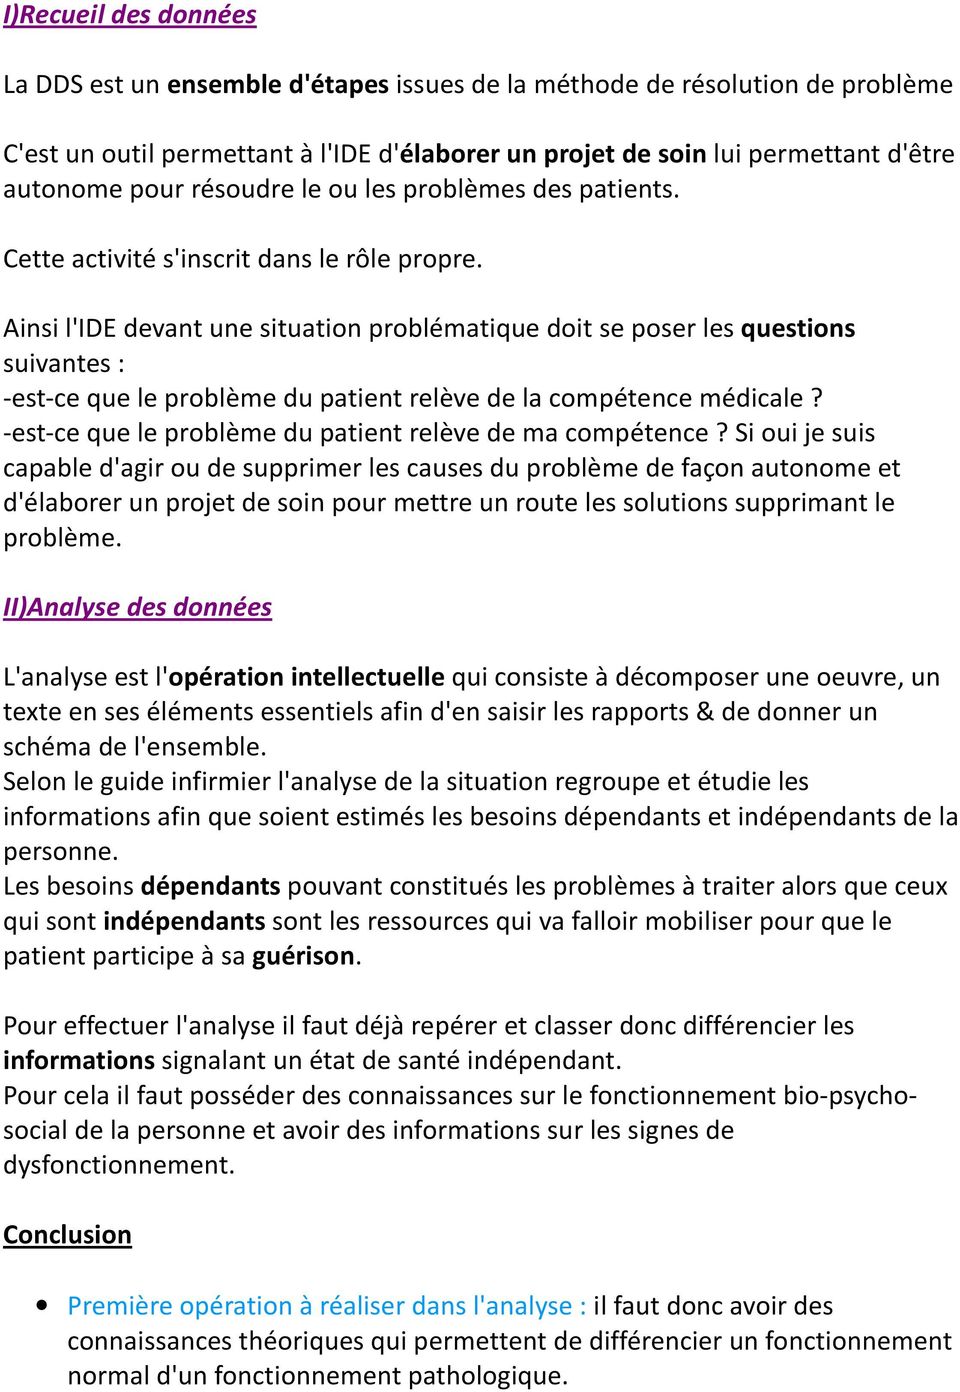 Ainsi l'ide devant une situation problématique doit se poser les questions suivantes : -est-ce que le problème du patient relève de la compétence médicale?